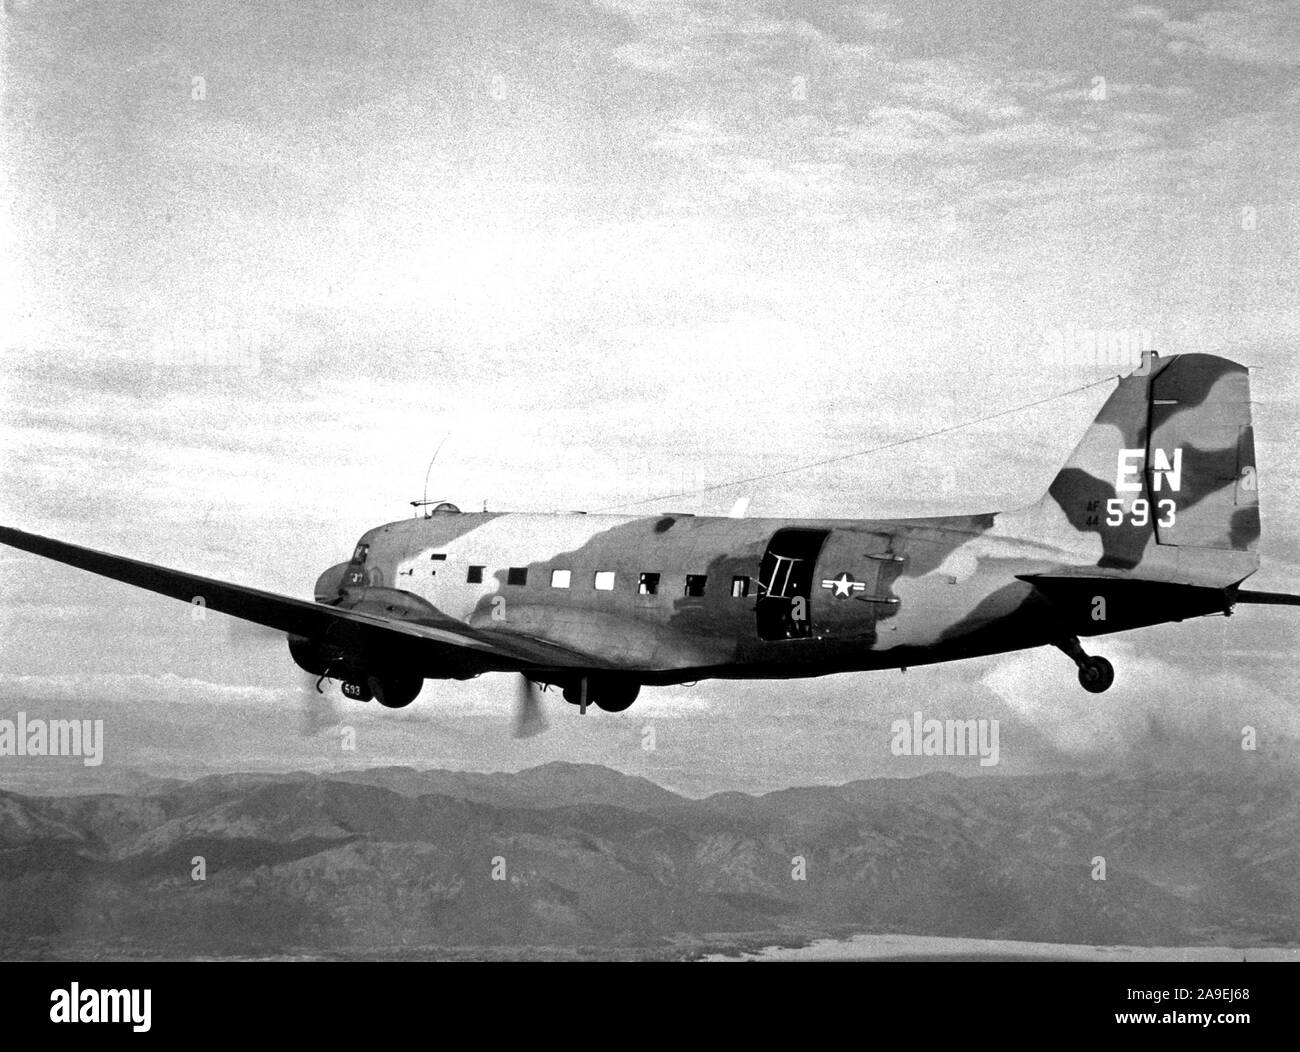 1967 - STATI UNITI Air Force AC-47 Dragon velivolo vola missioni oltre il Sud del Vietnam a sostegno di Allied avamposti. Foto Stock